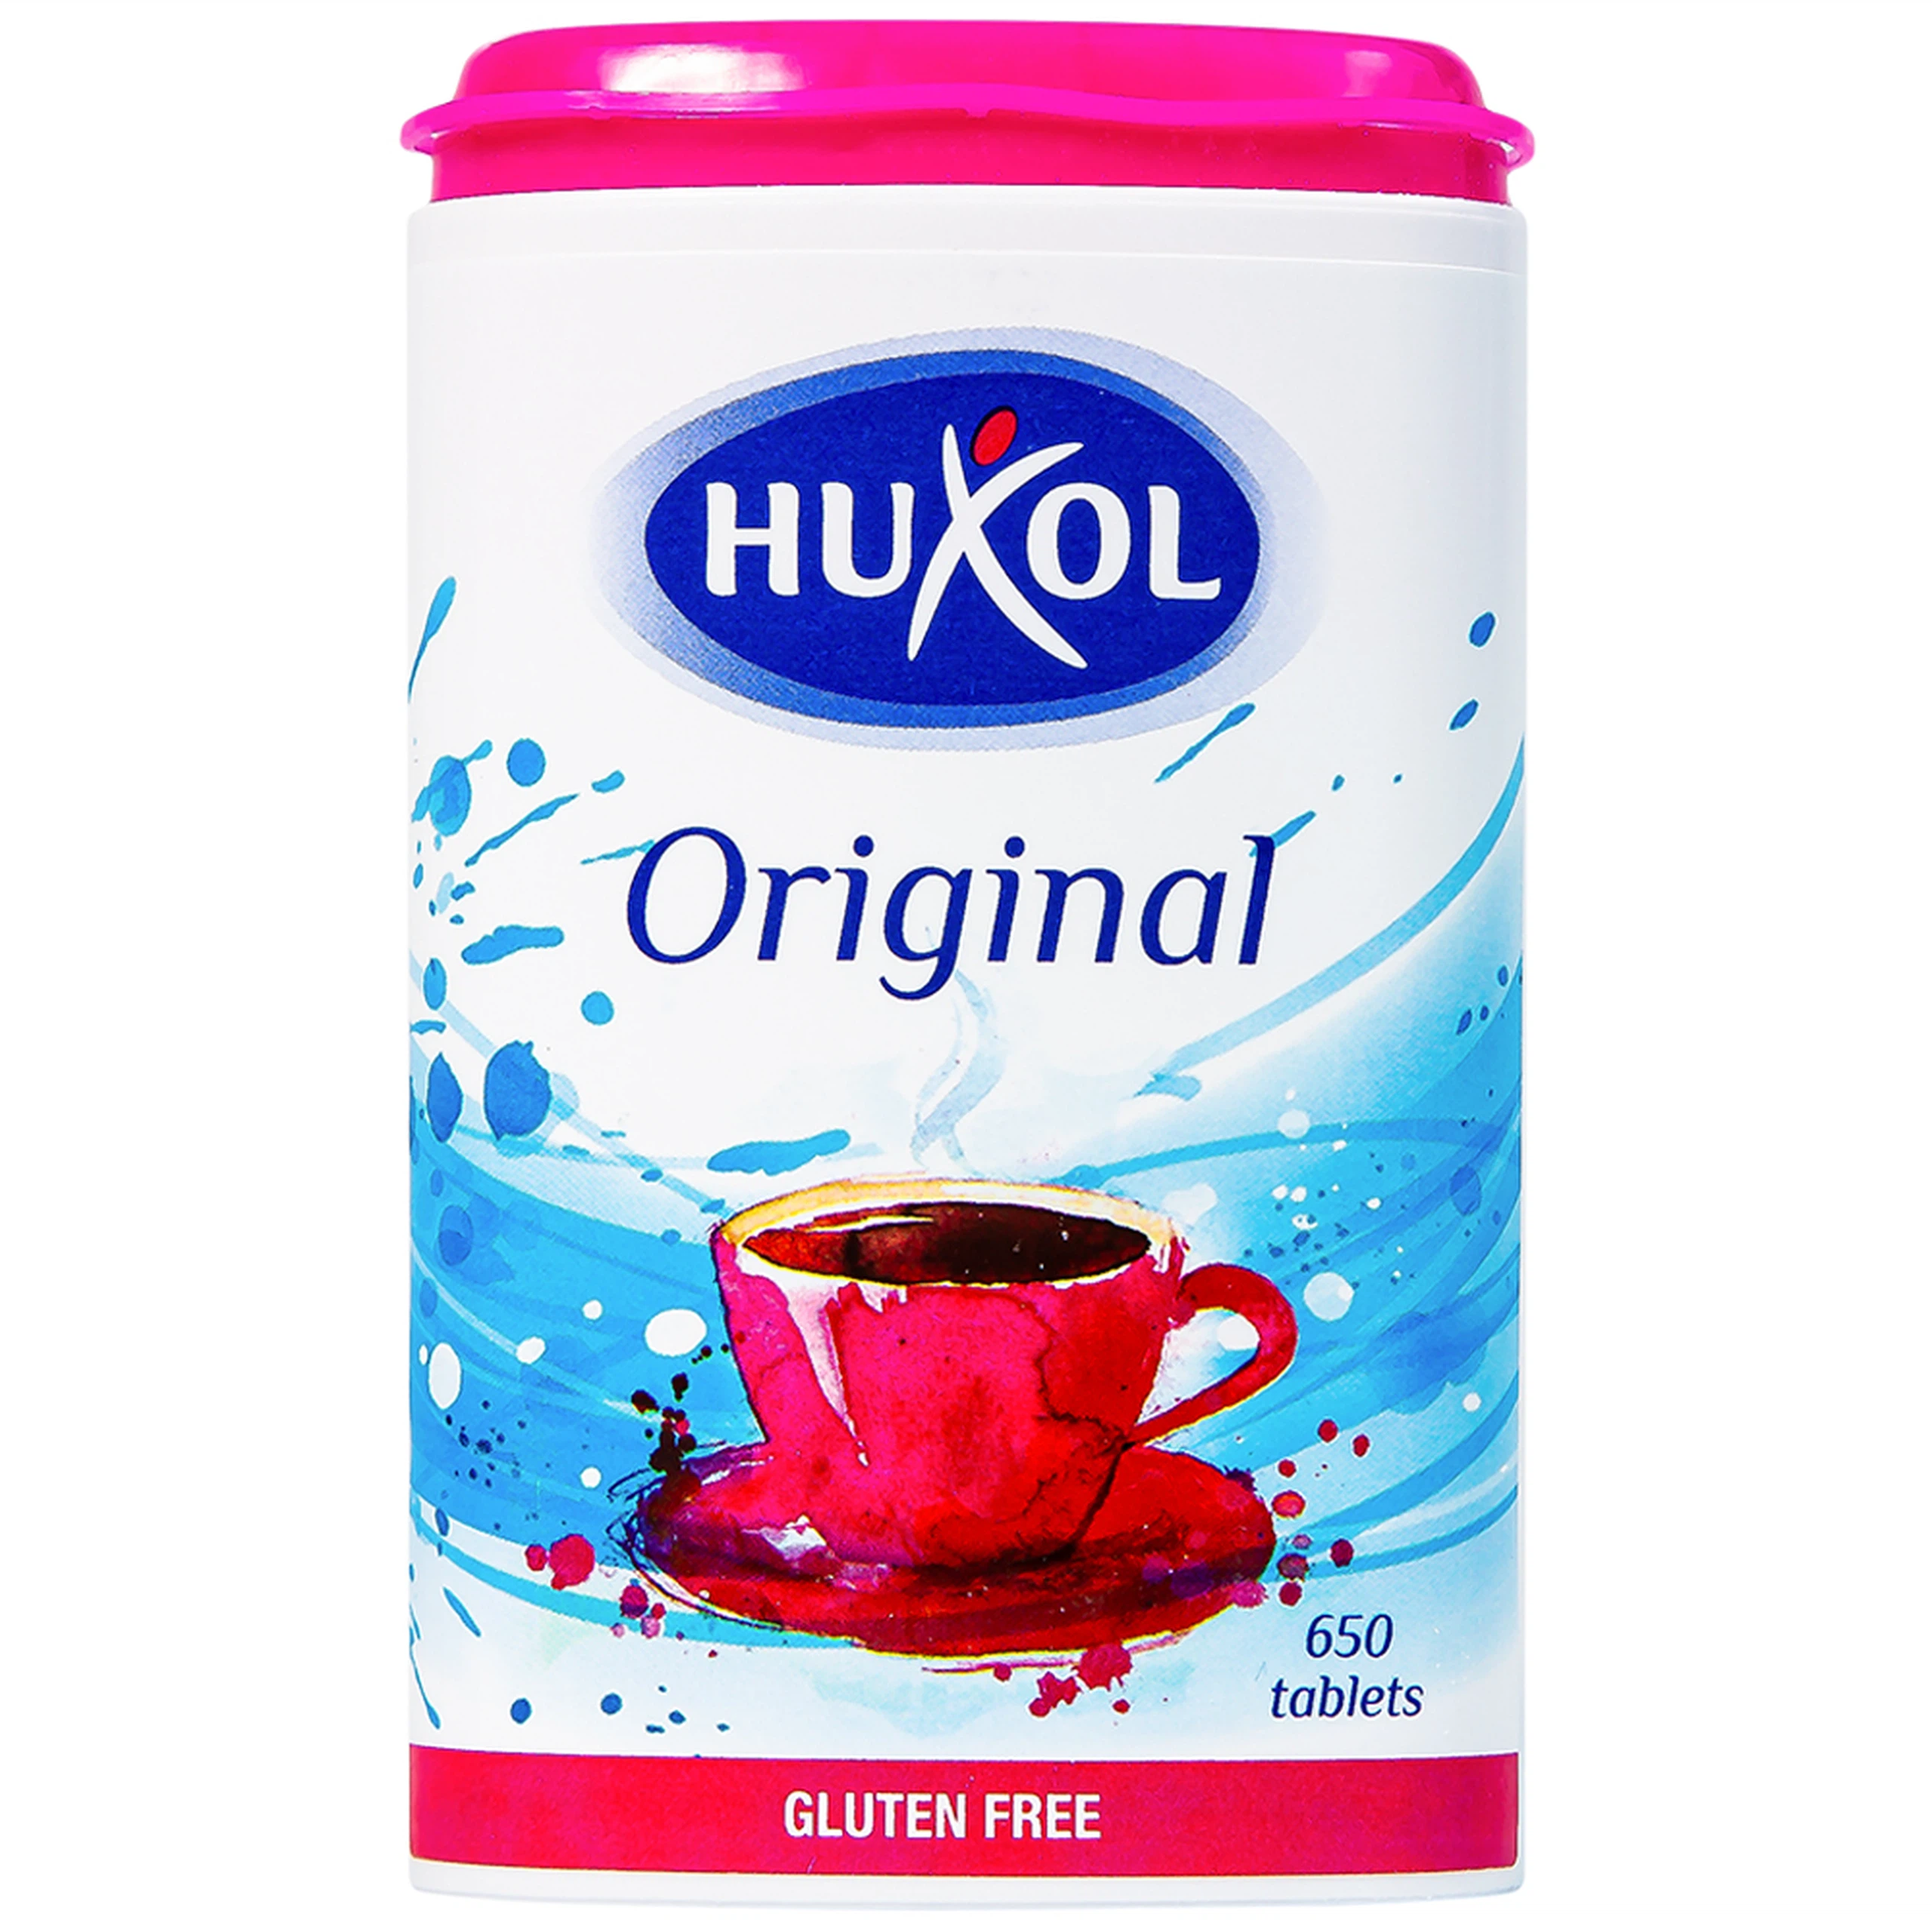 Đường ăn kiêng Huxol Original phù hợp cho người tiểu đường, béo phì, cao huyết áp (650 viên)